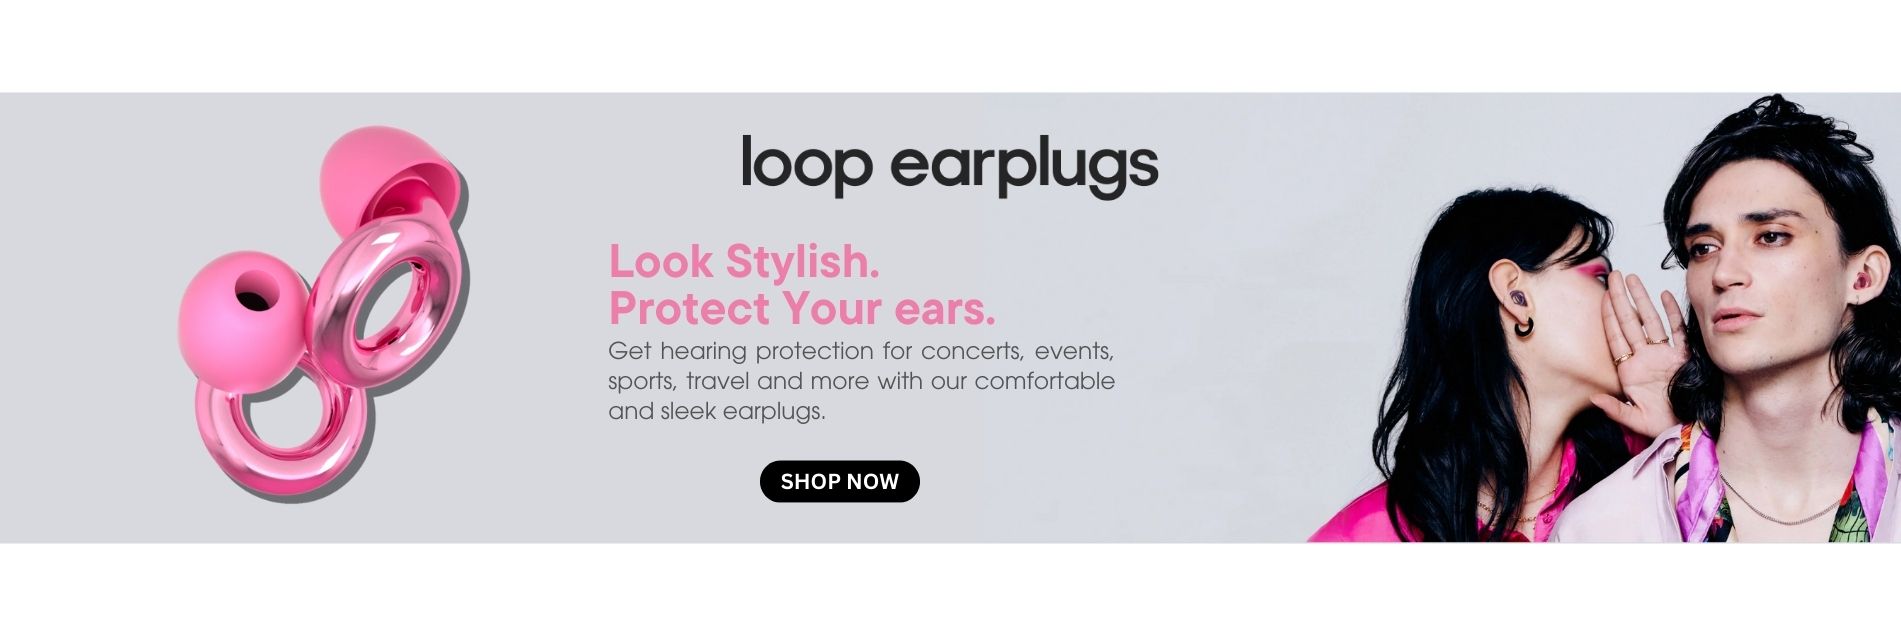 loop earplug